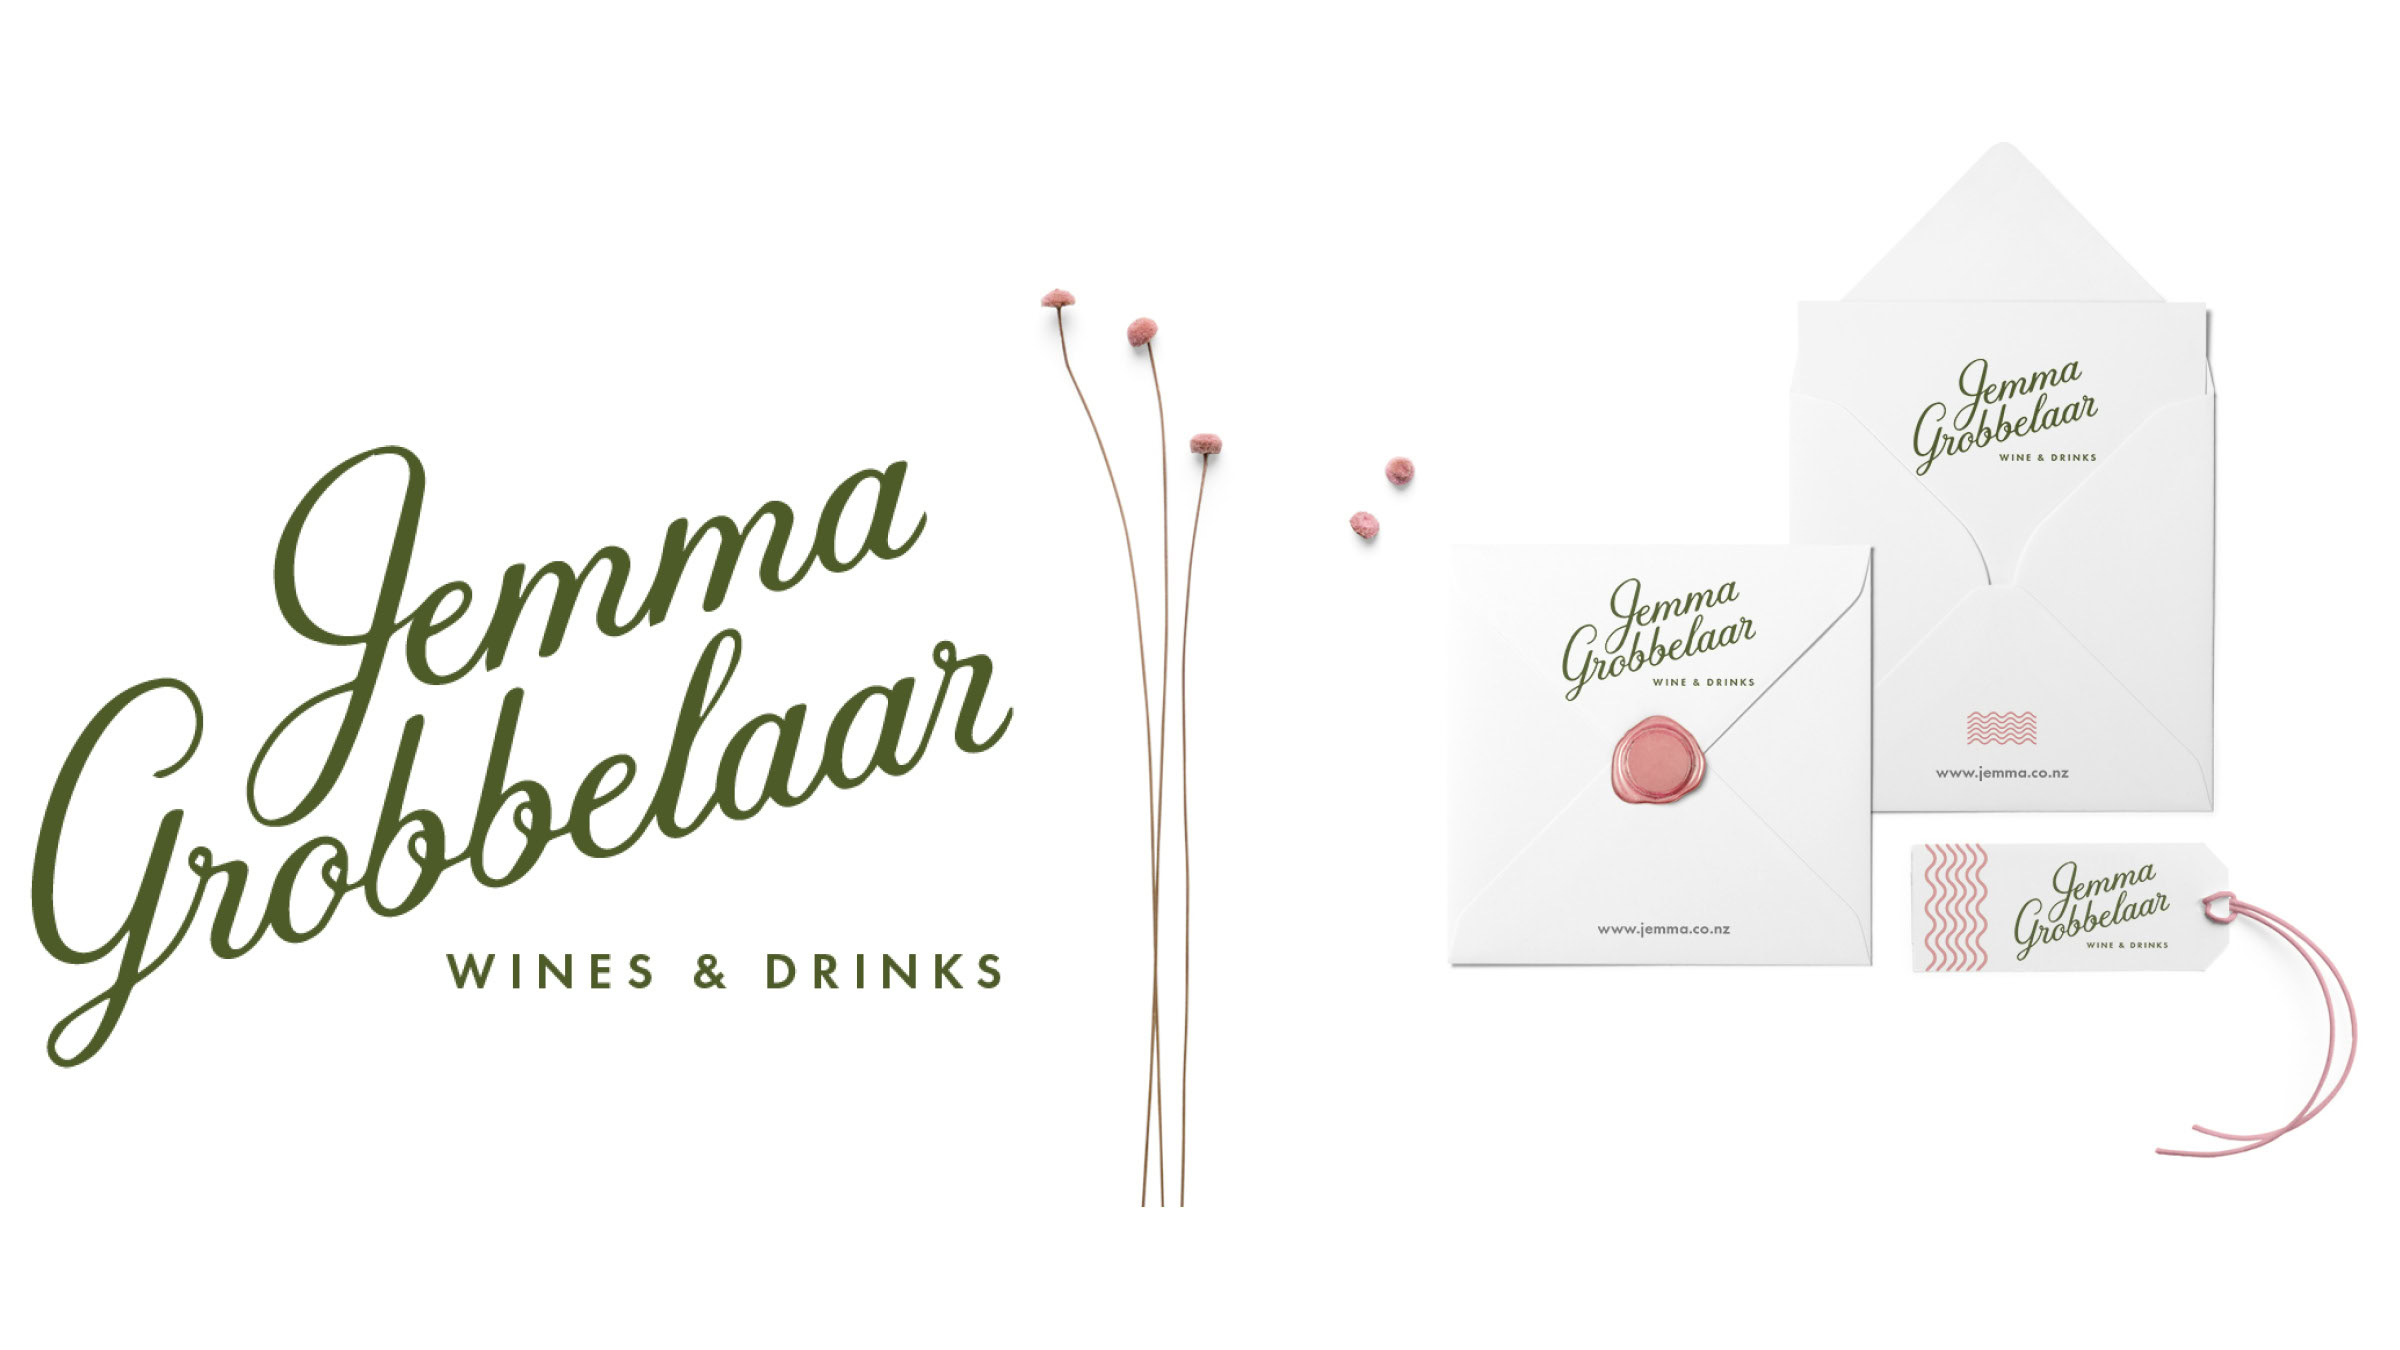 Jemma Grobbelaar Wine & Drinks branding demonstrated on various print collateral 